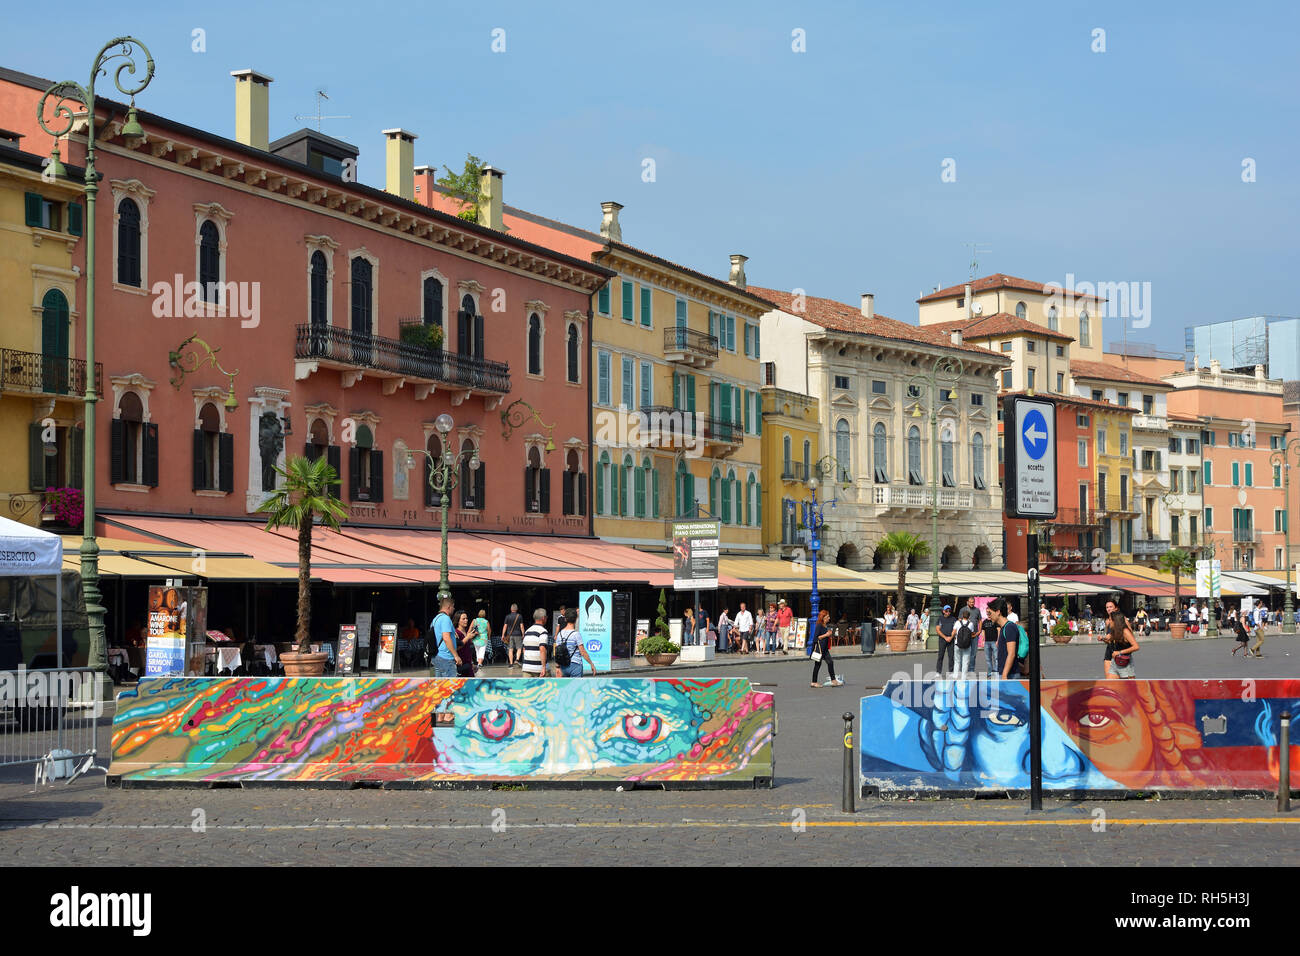 La gente in Piazza Bra, nel centro storico di Verona - Italia. Foto Stock